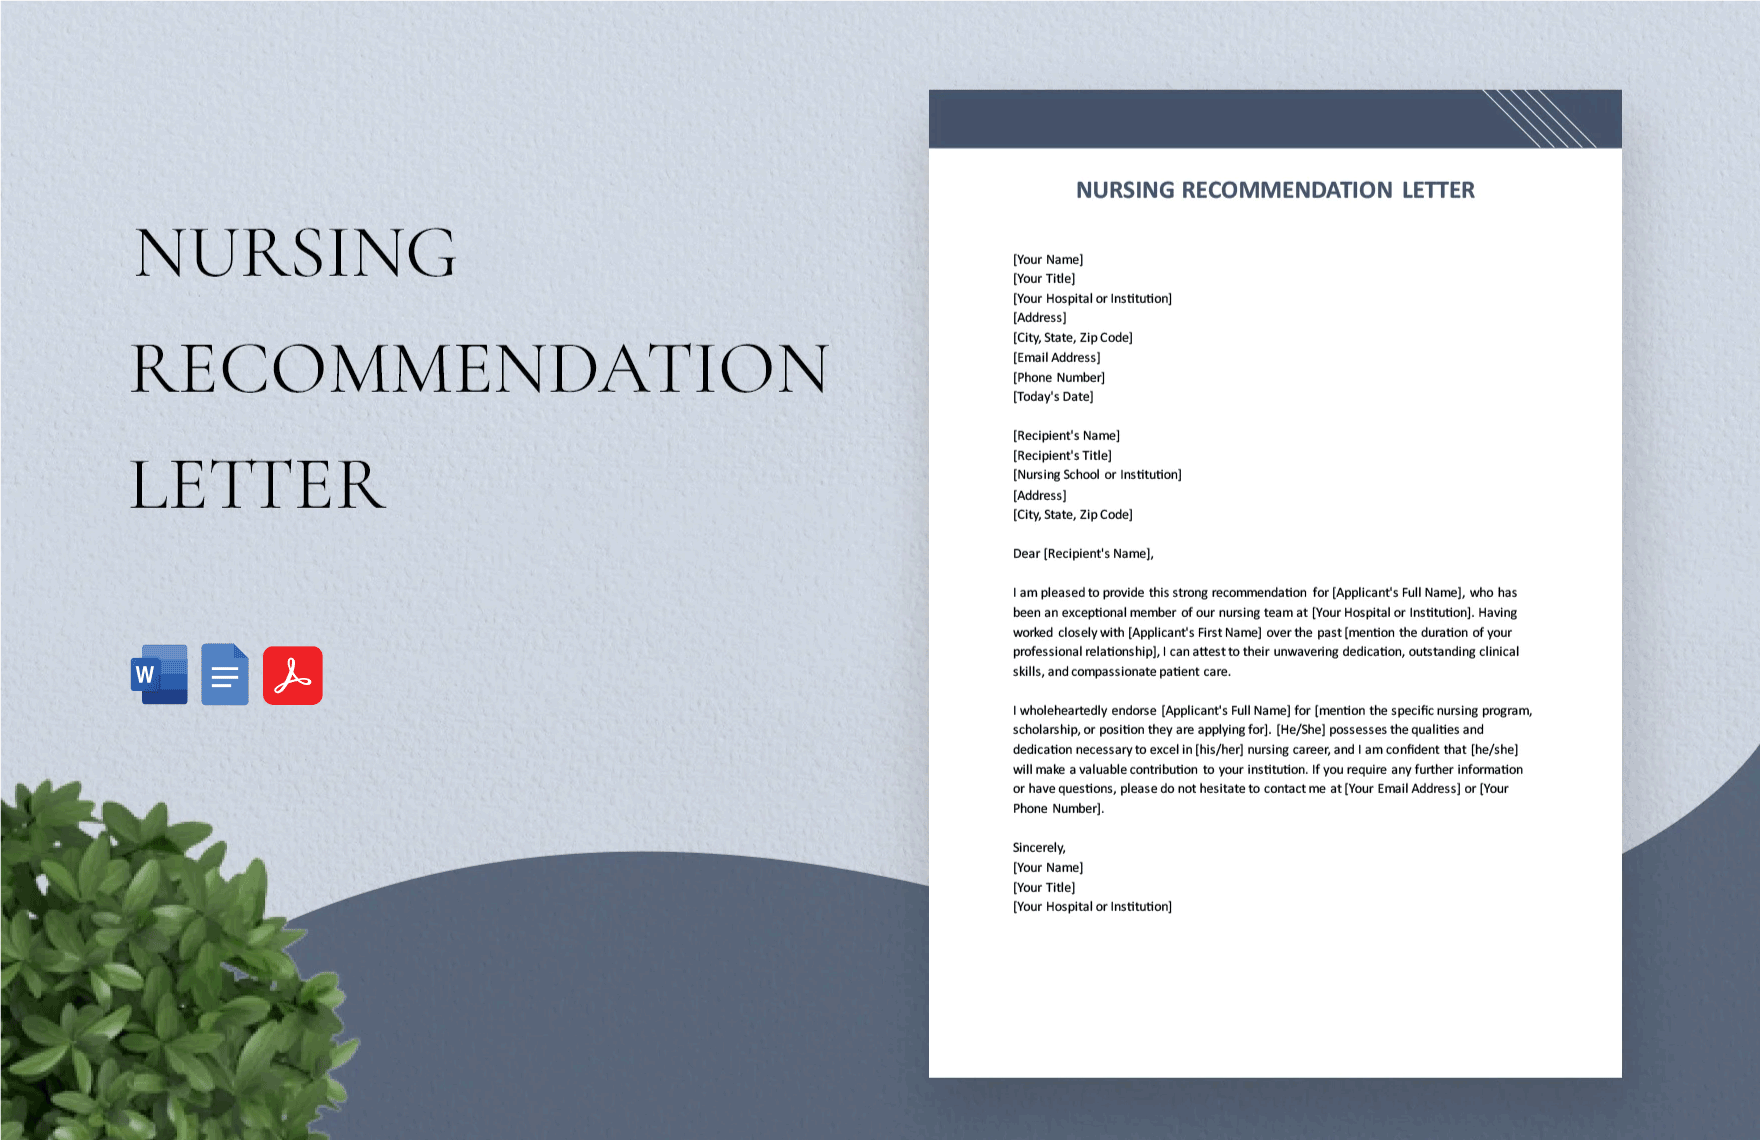 Nursing Recommendation Letter in Word, Google Docs, PDF